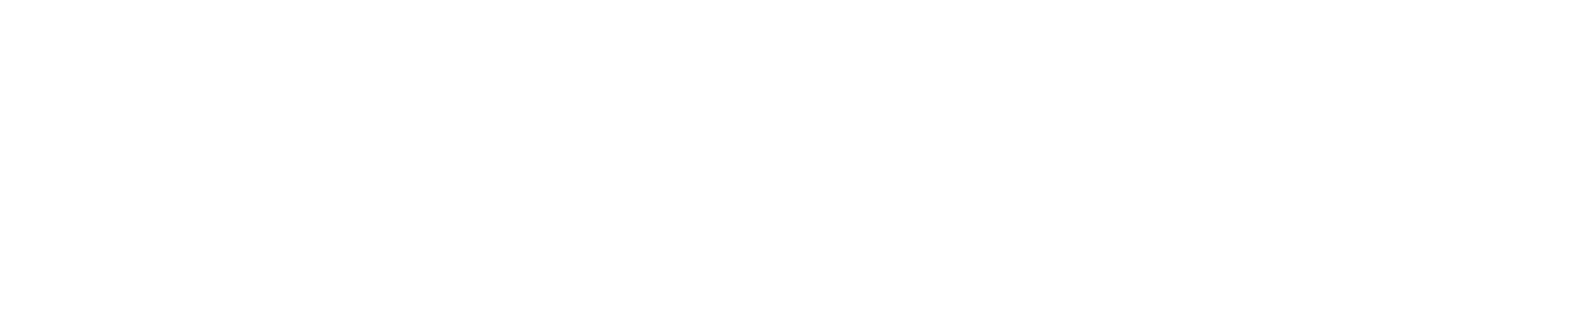 Telus logo large for dark backgrounds (transparent PNG)